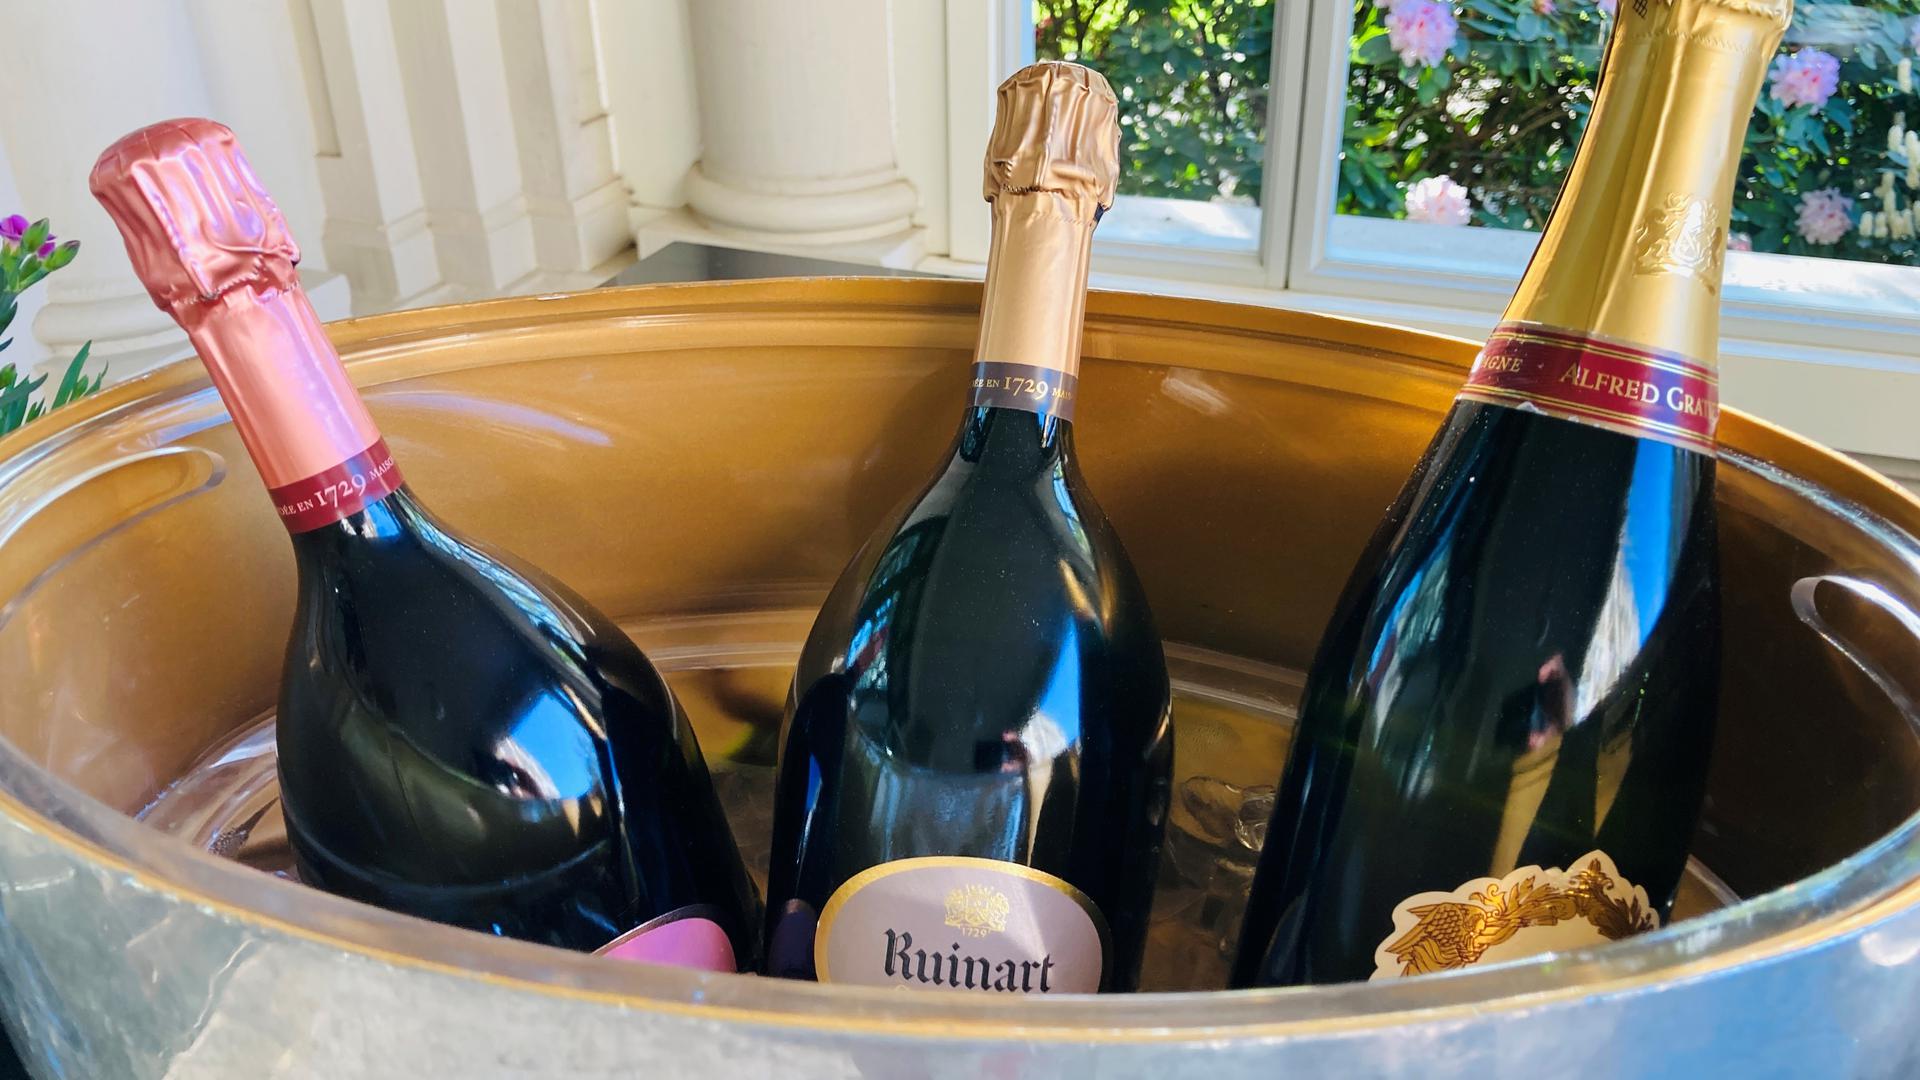 Champagnerflaschen werden in einem Kübel gekühlt. 